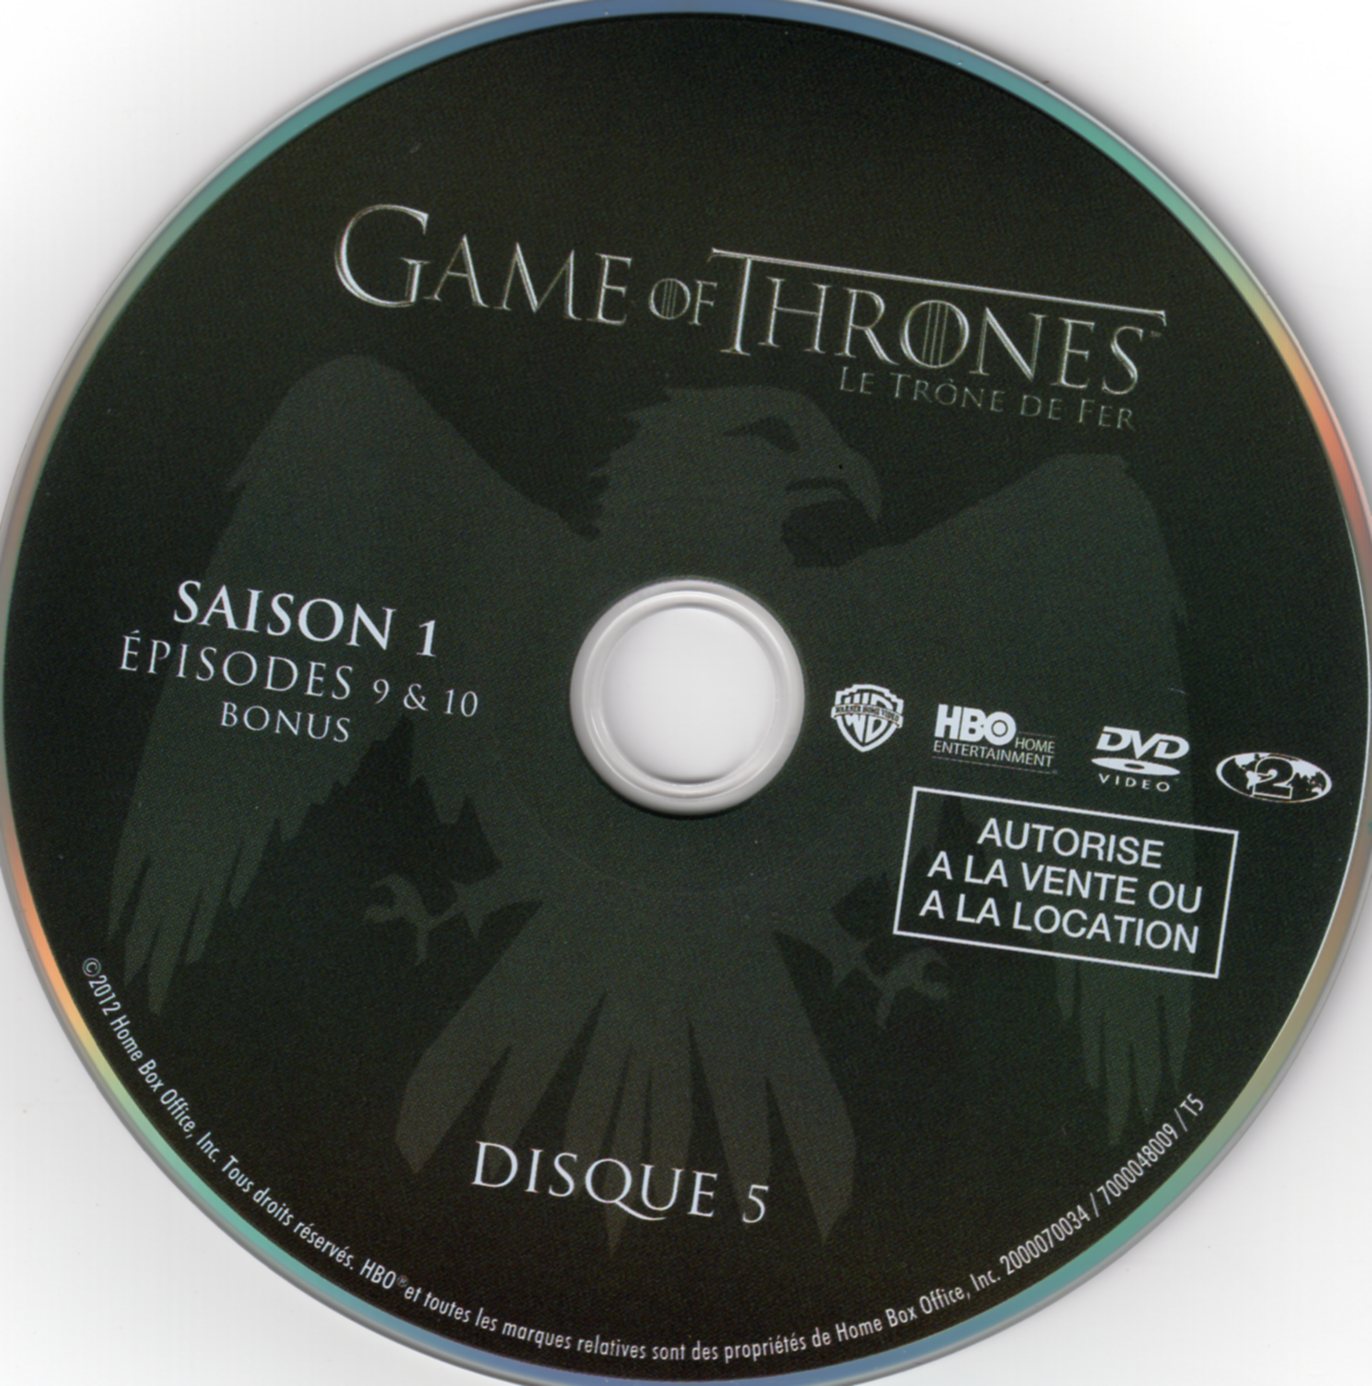 Game of thrones (le trone de fer) Saison 1 DVD 5